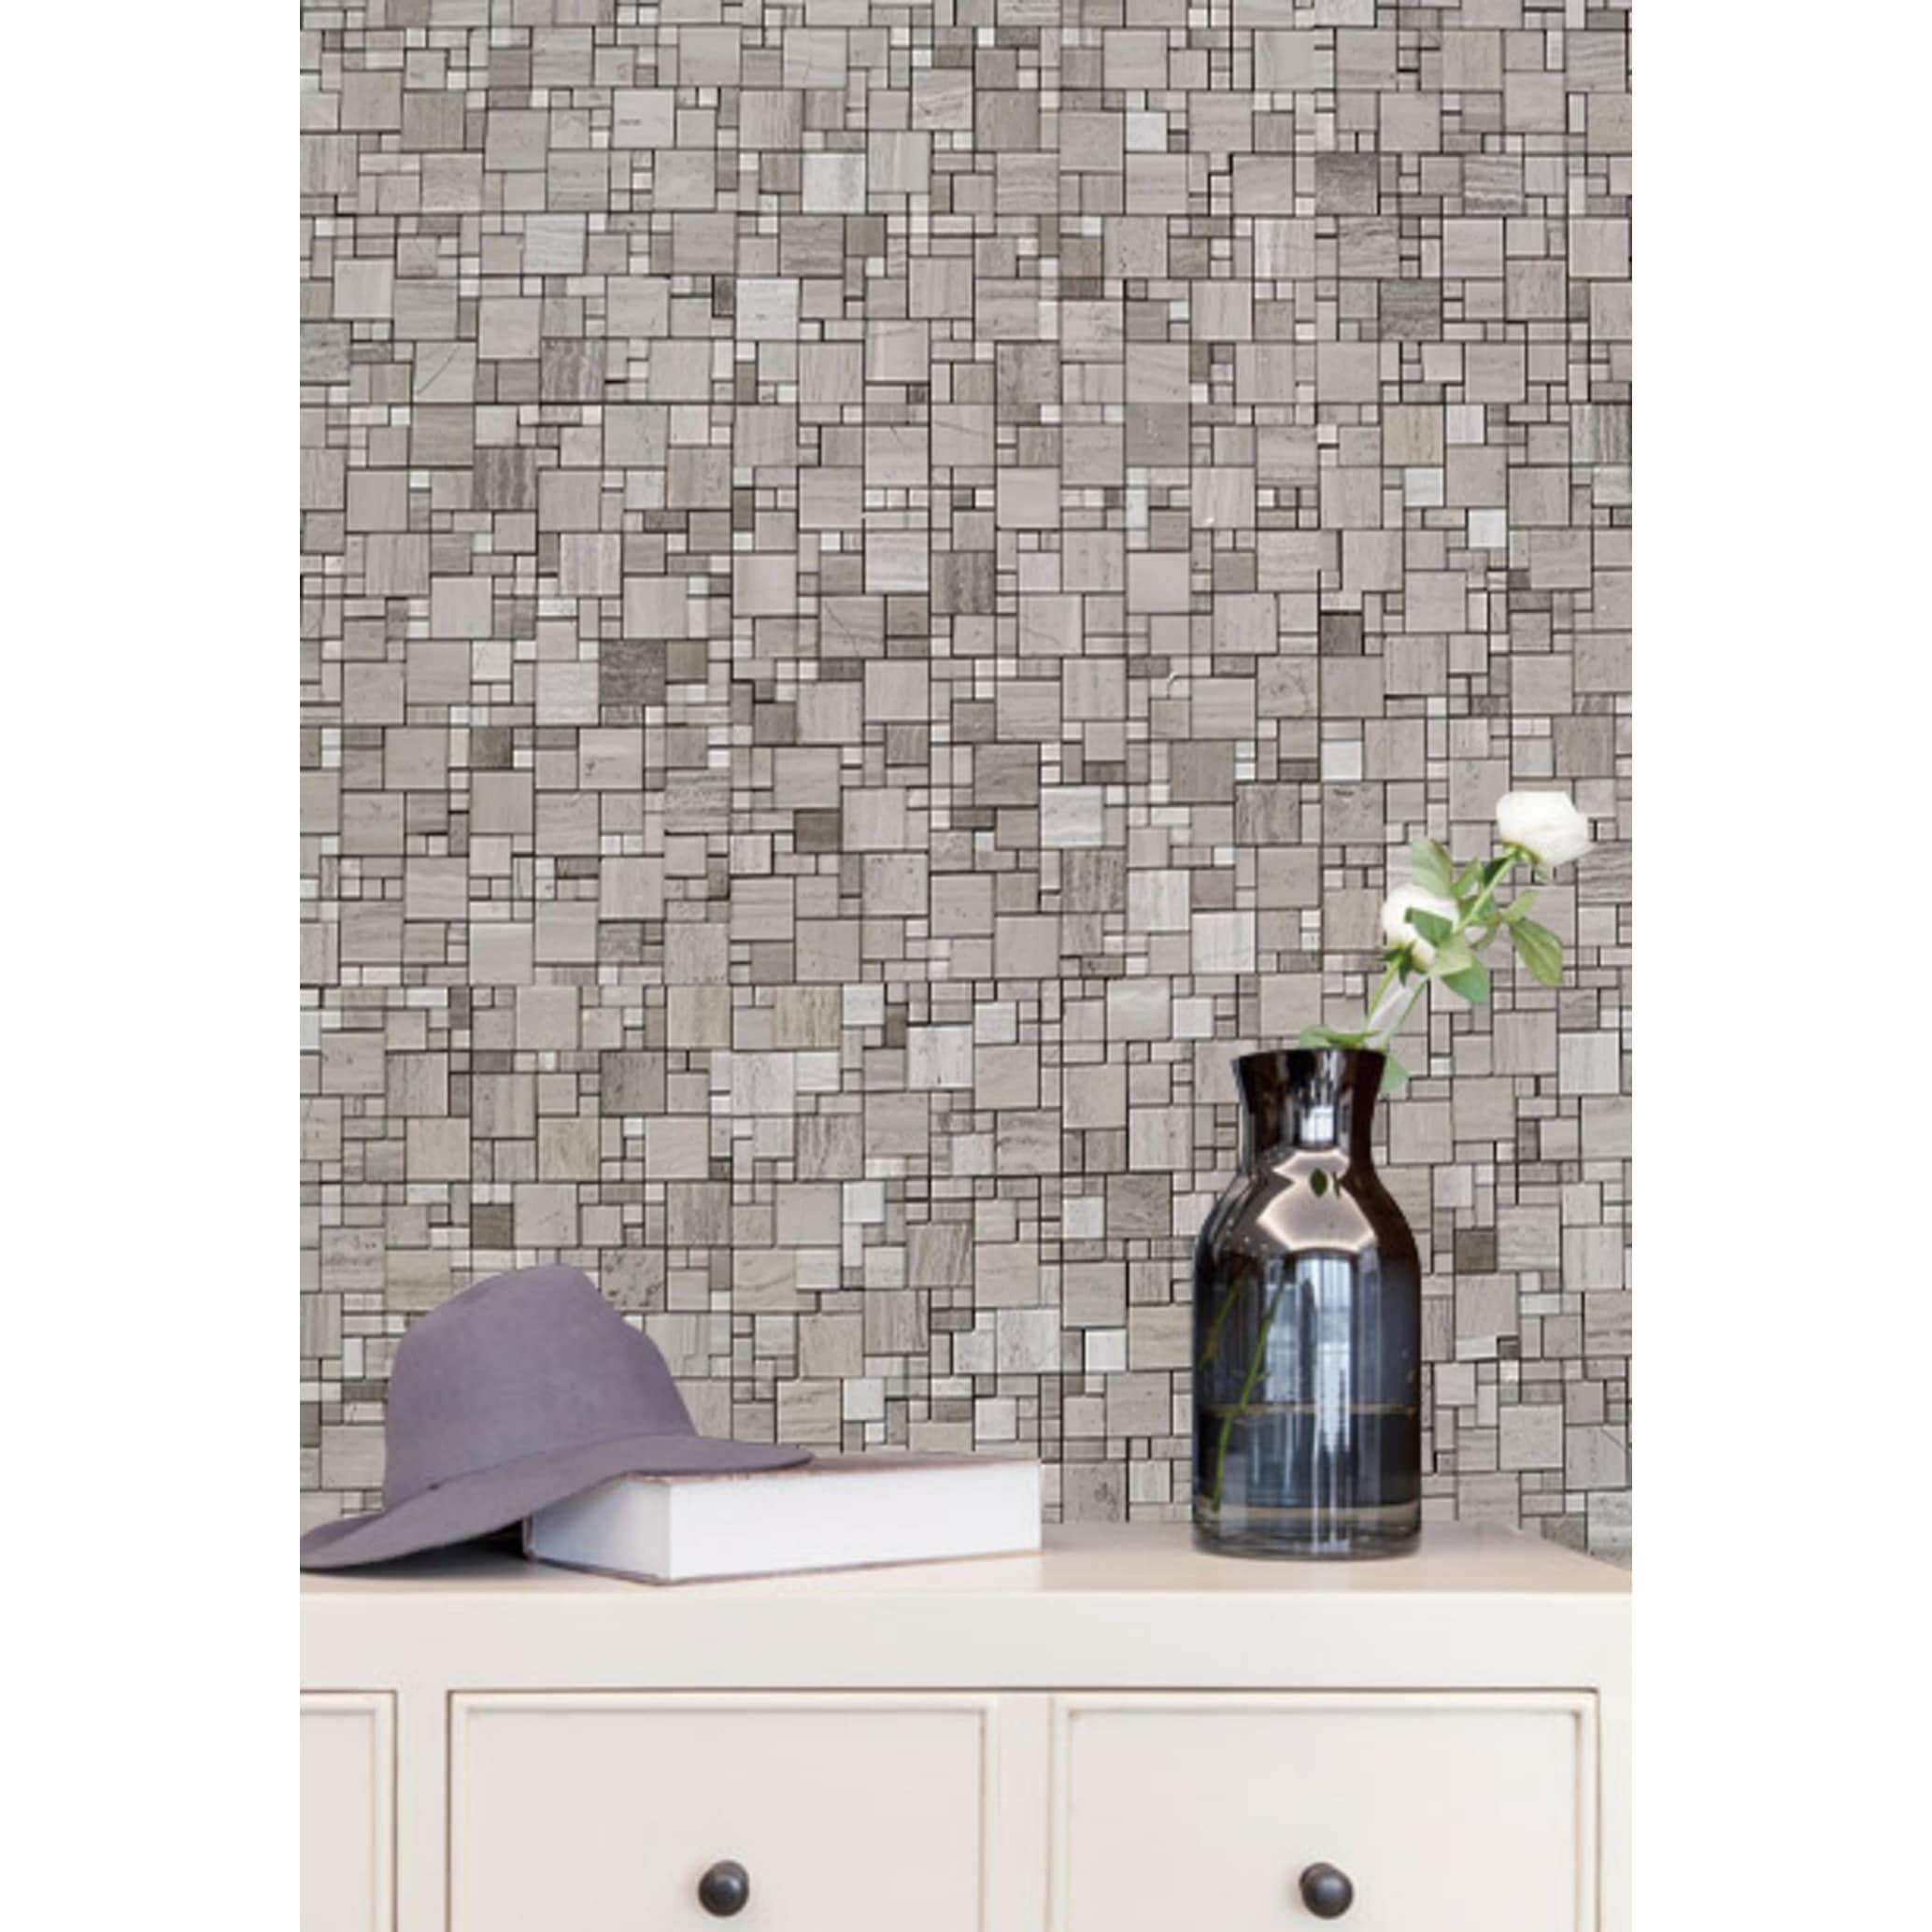 E-MosaicTile White and Golden Chevron Marble Wall Tile Luxury Decorative  Backsplash